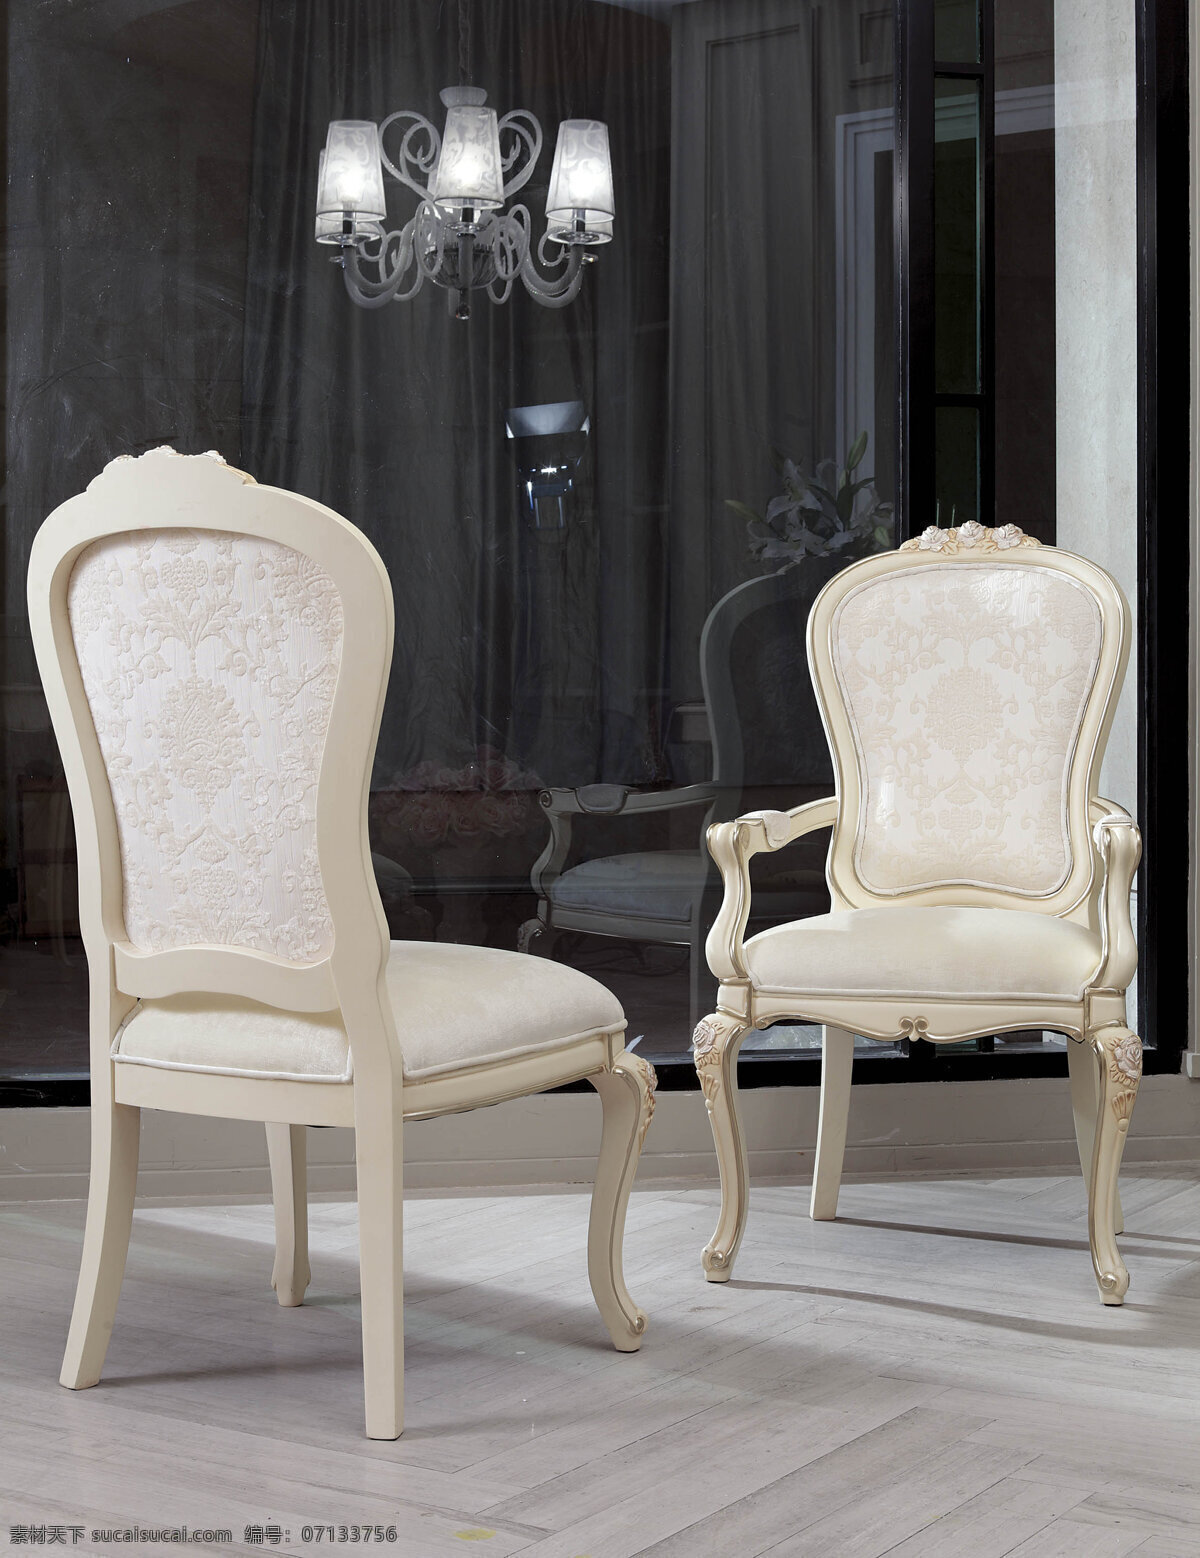 雕花 家居生活 家具 玫瑰 欧式 生活百科 椅子 白色 扶手椅 温莎情缘 高端品牌 家居装饰素材